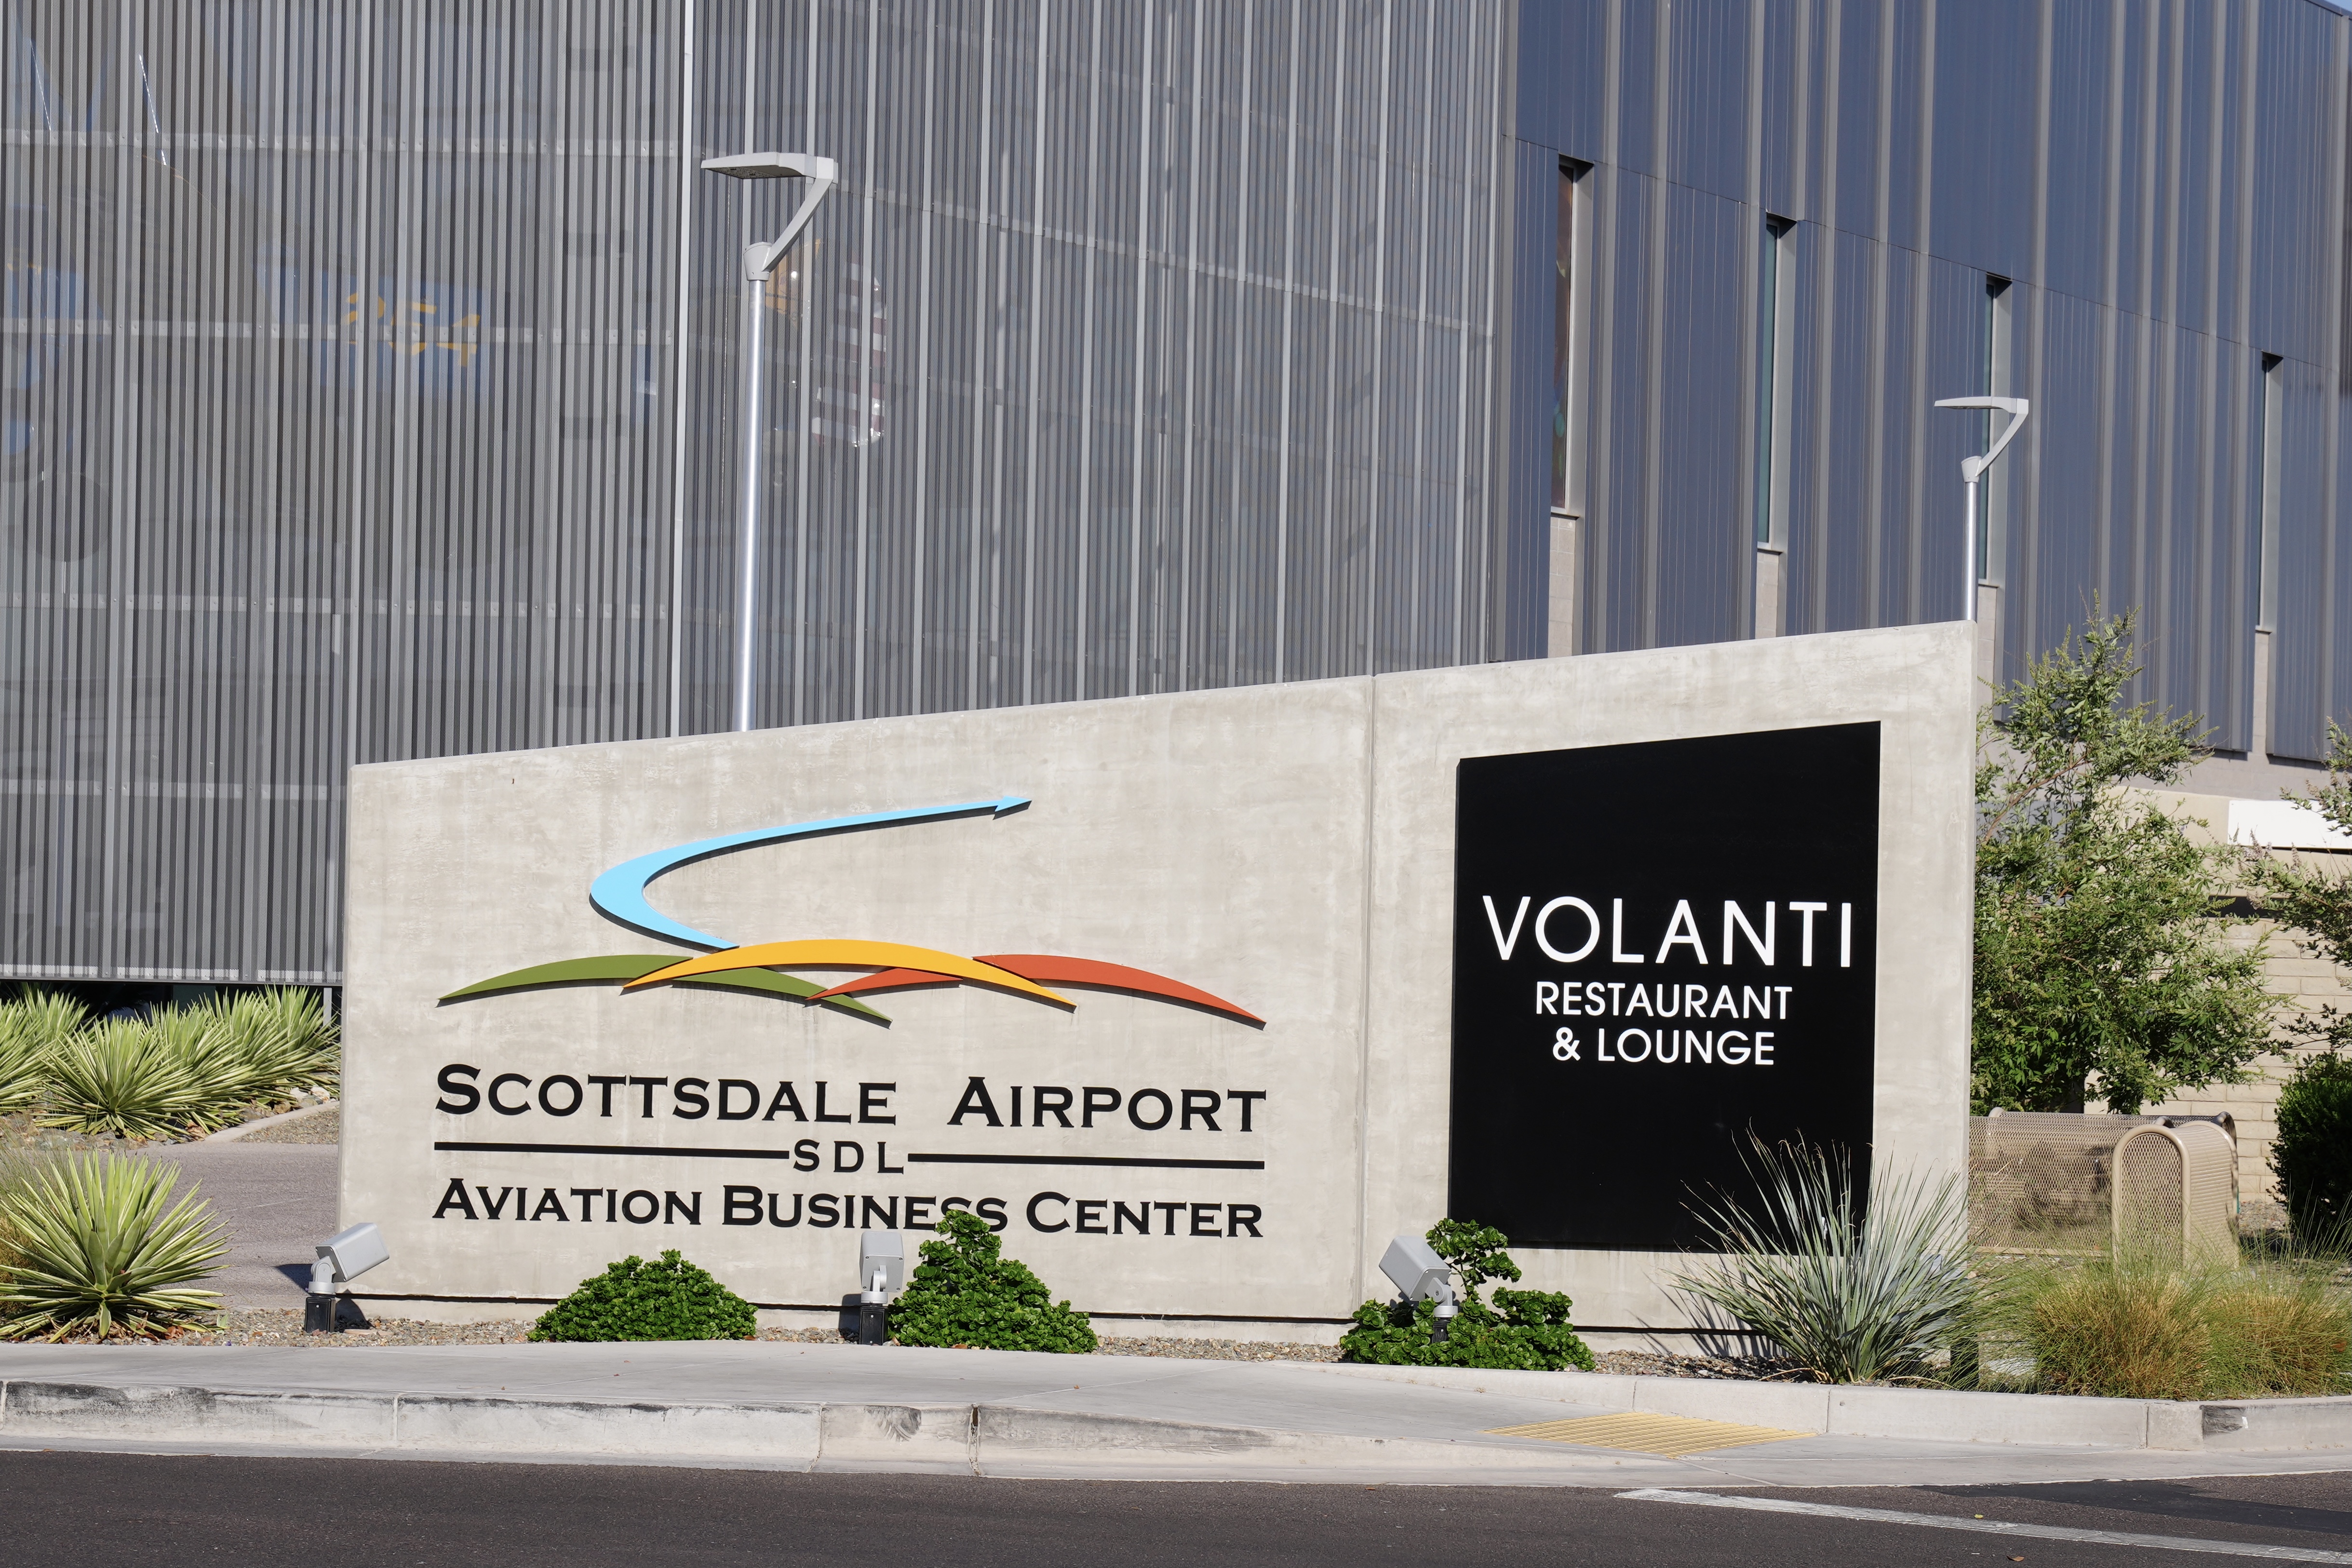 https://upload.wikimedia.org/wikipedia/commons/e/e0/Scottsdale_Airport%2C_Scottsdale_Arizona.jpg